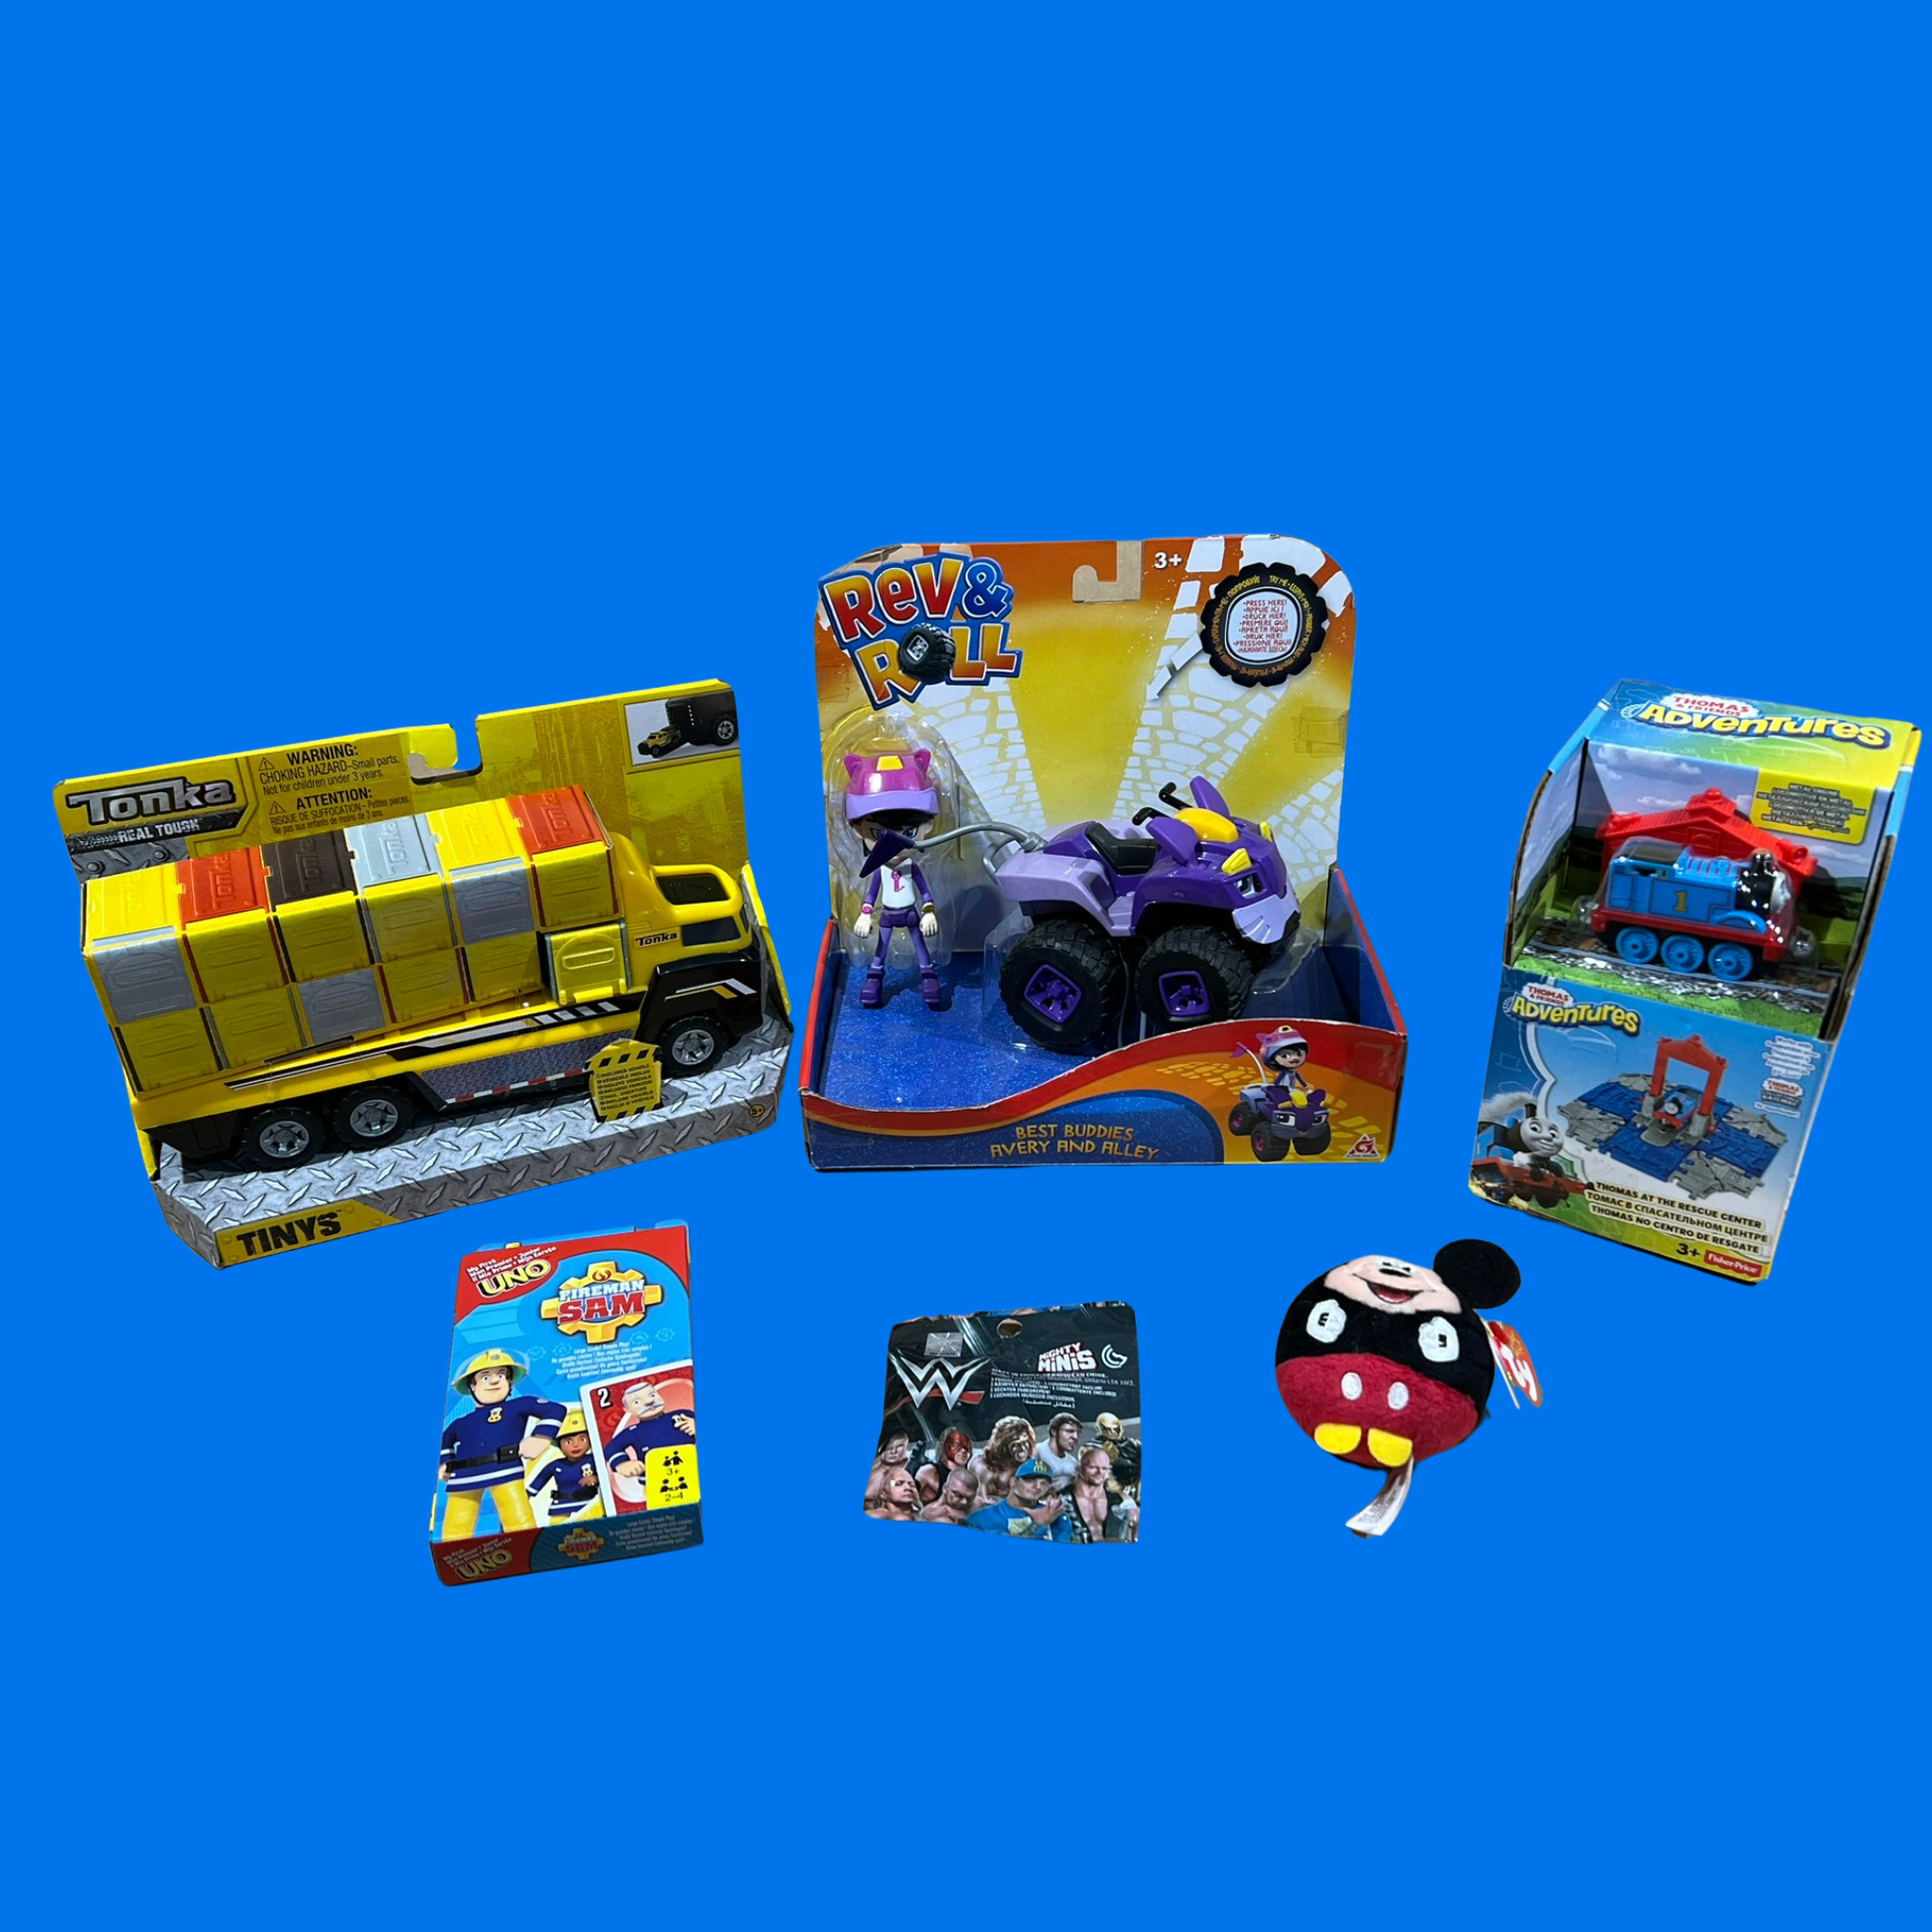 Toptoys2u Mystery Bargain Bundle Box - Boys or Girls Toys 4-8 Yrs - Includes 6 Toys - Toptoys2u